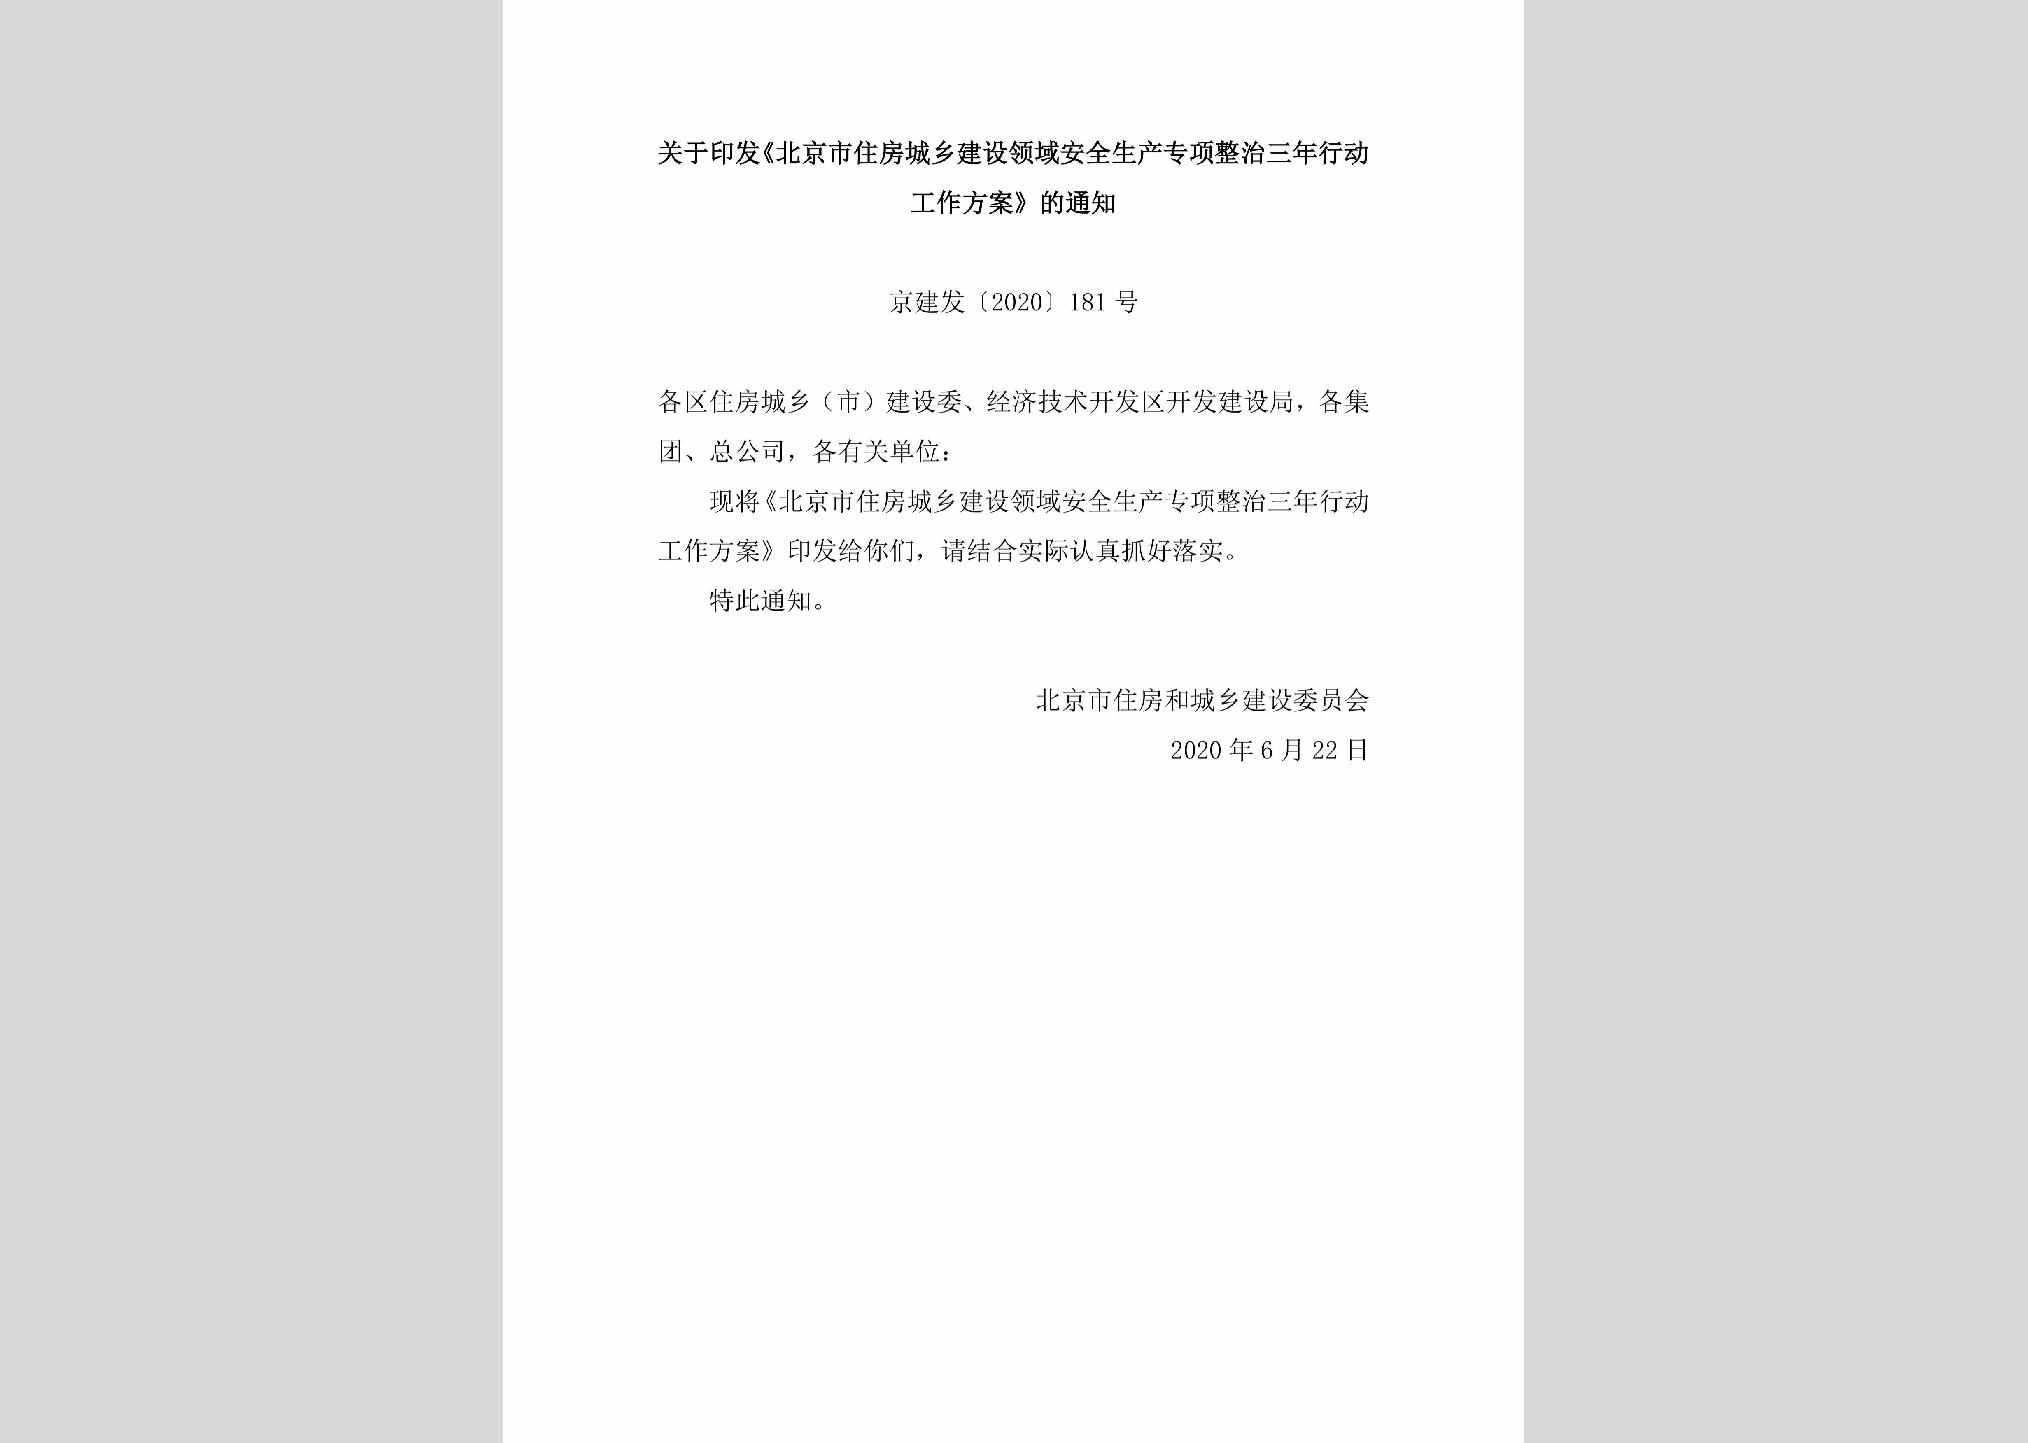 京建发[2020]181号：关于印发《北京市住房城乡建设领域安全生产专项整治三年行动工作方案》的通知